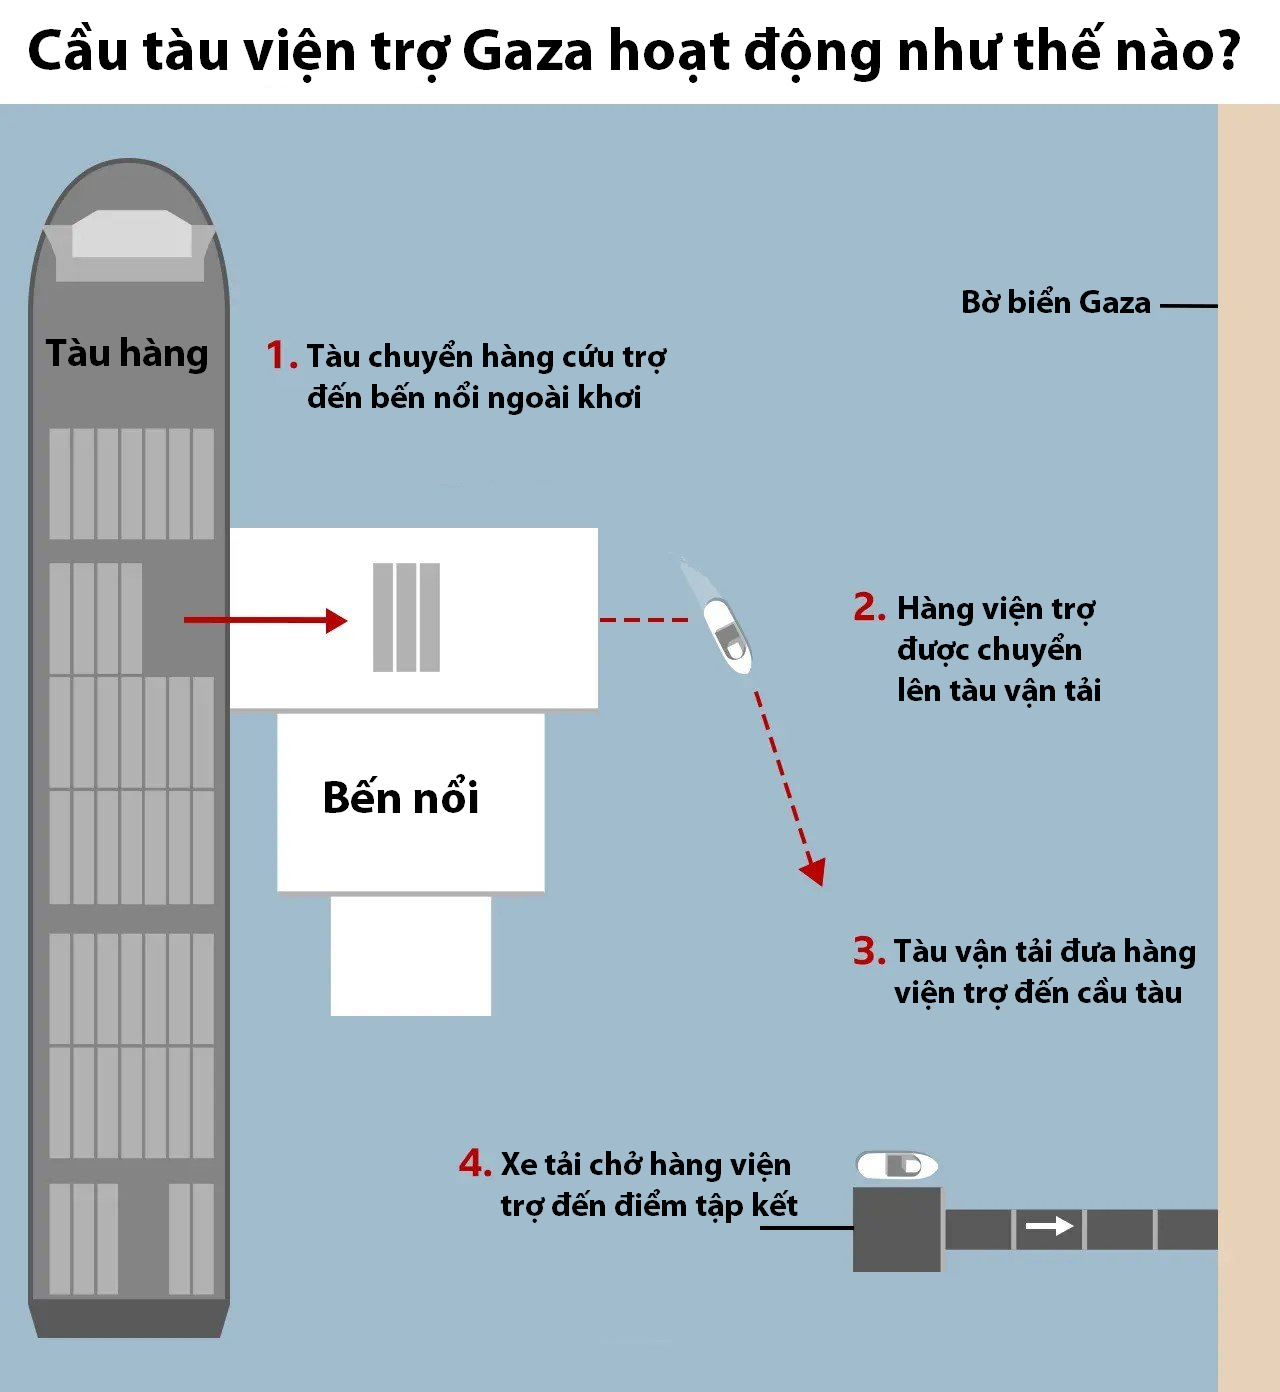 Cách hoạt động của cầu tàu viện trợ Dải Gaza do Mỹ xây dựng. Đồ họa: BBC